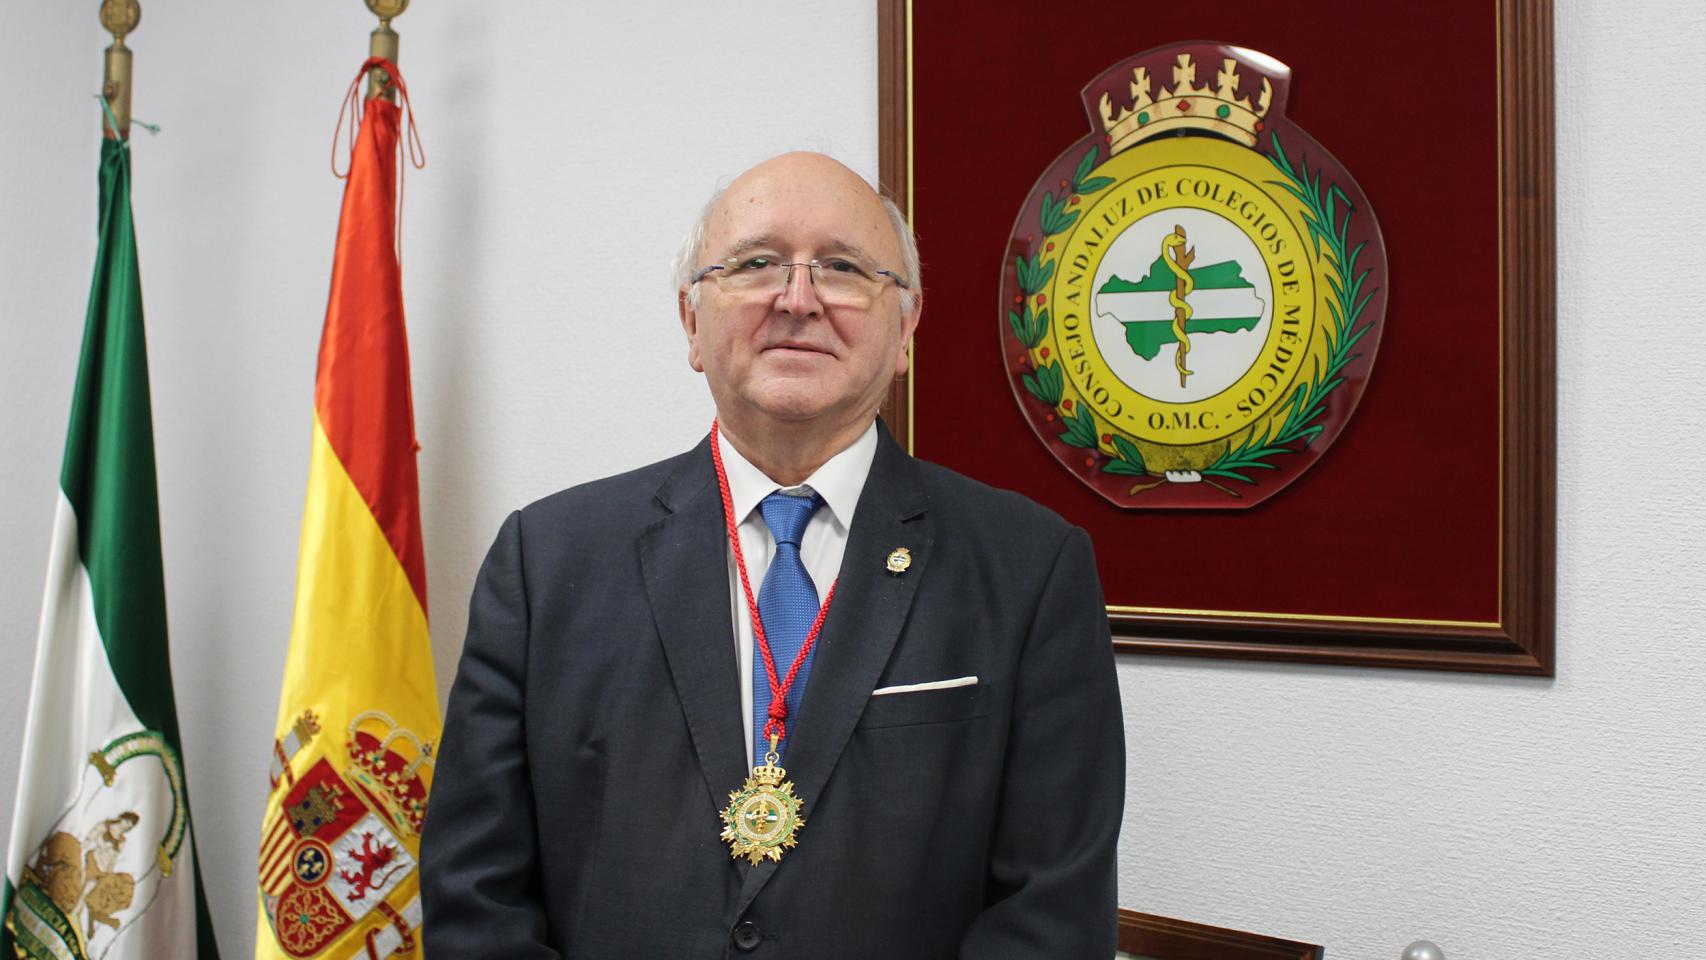 El presidente del Consejo Andaluz de Colegios de Médicos, Antonio Aguado.